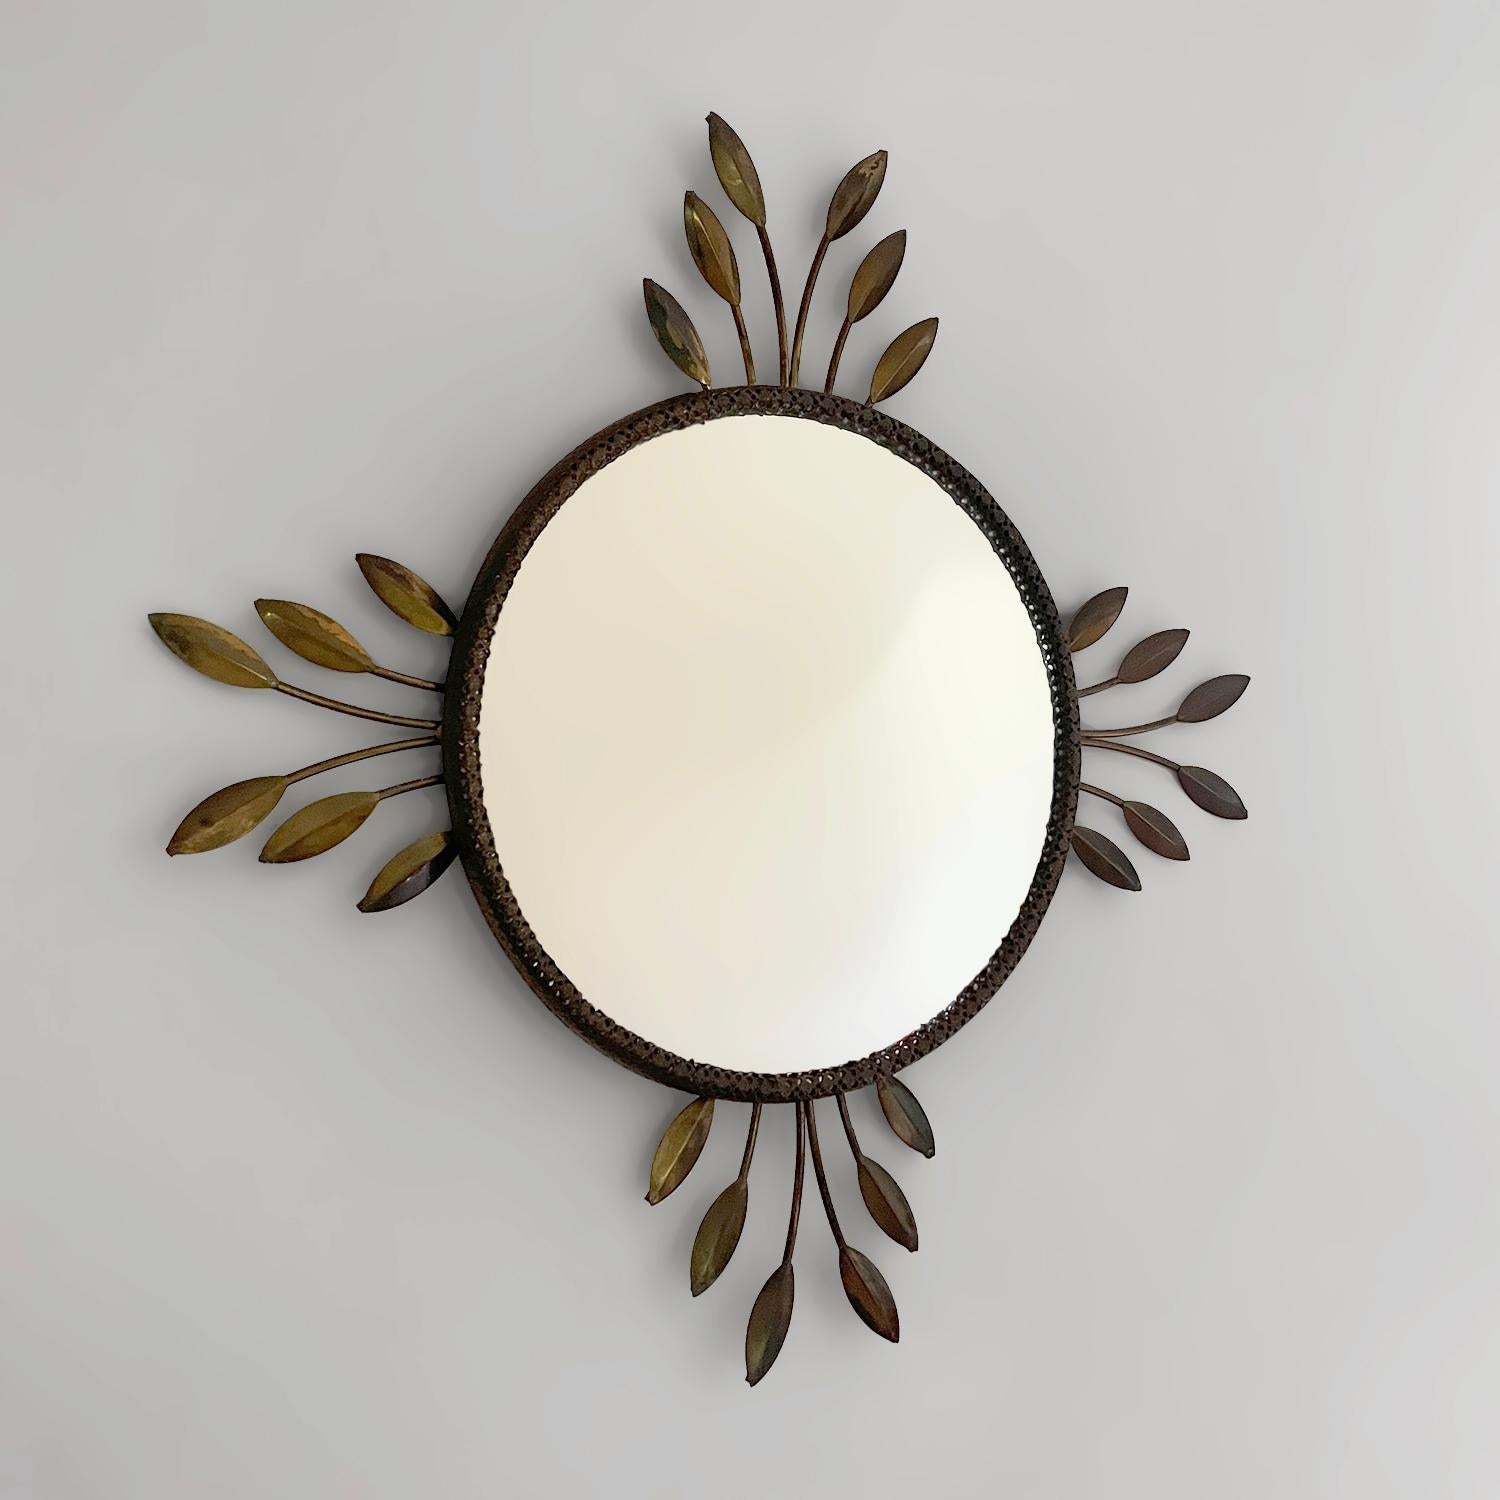 Konvexer Spiegel mit floralem Sonnenschliff aus Italien
Italien, ca. 1950er Jahre 
Dieser Spiegel zaubert jedem, der ihm begegnet, ein Lächeln ins Gesicht
Gealterte Messing getönten floralen Blatt Detaillierung umfasst die geprägte Metall gestempelt